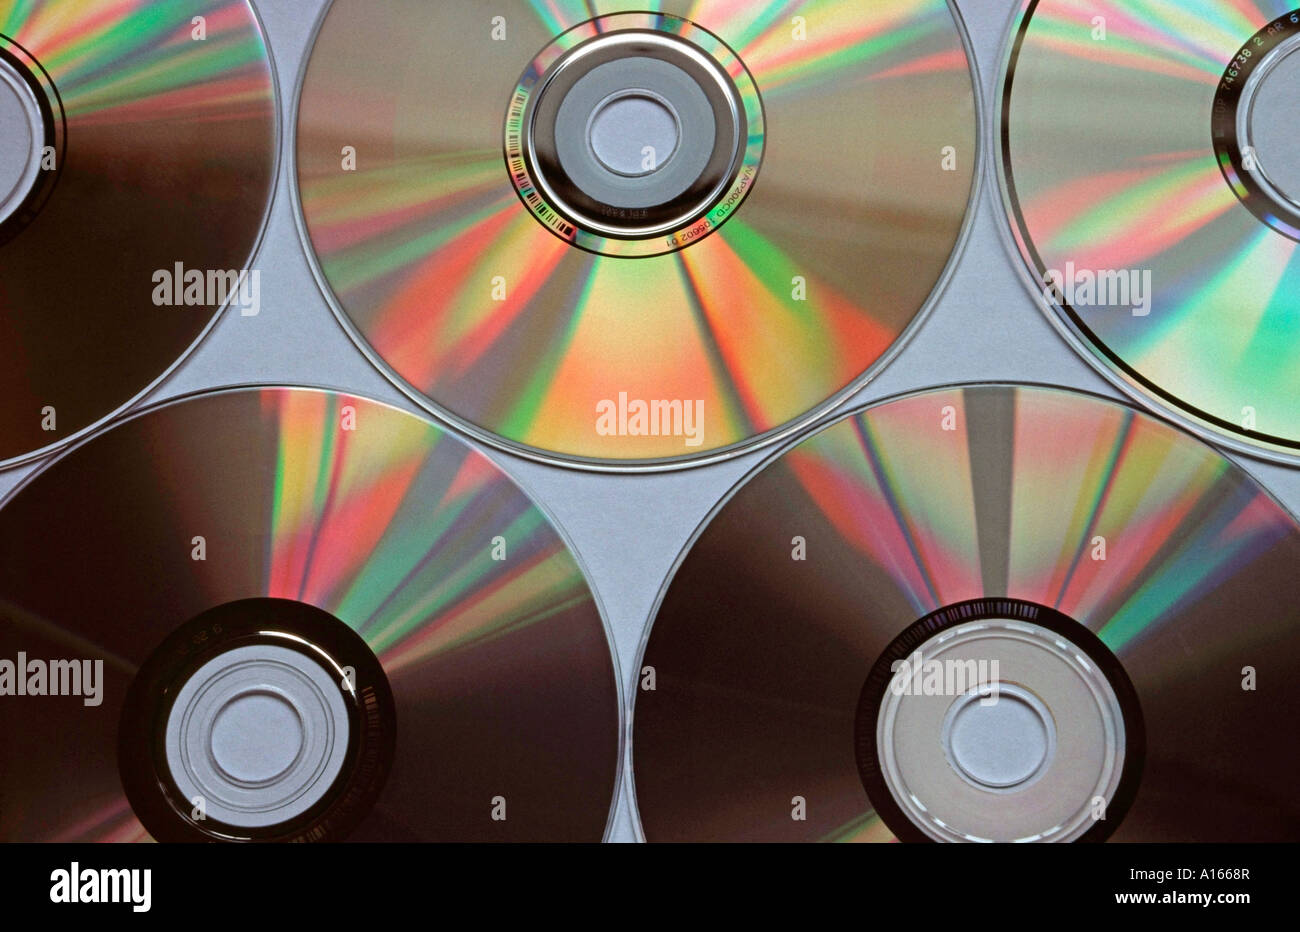 Compact discs Stock Photo